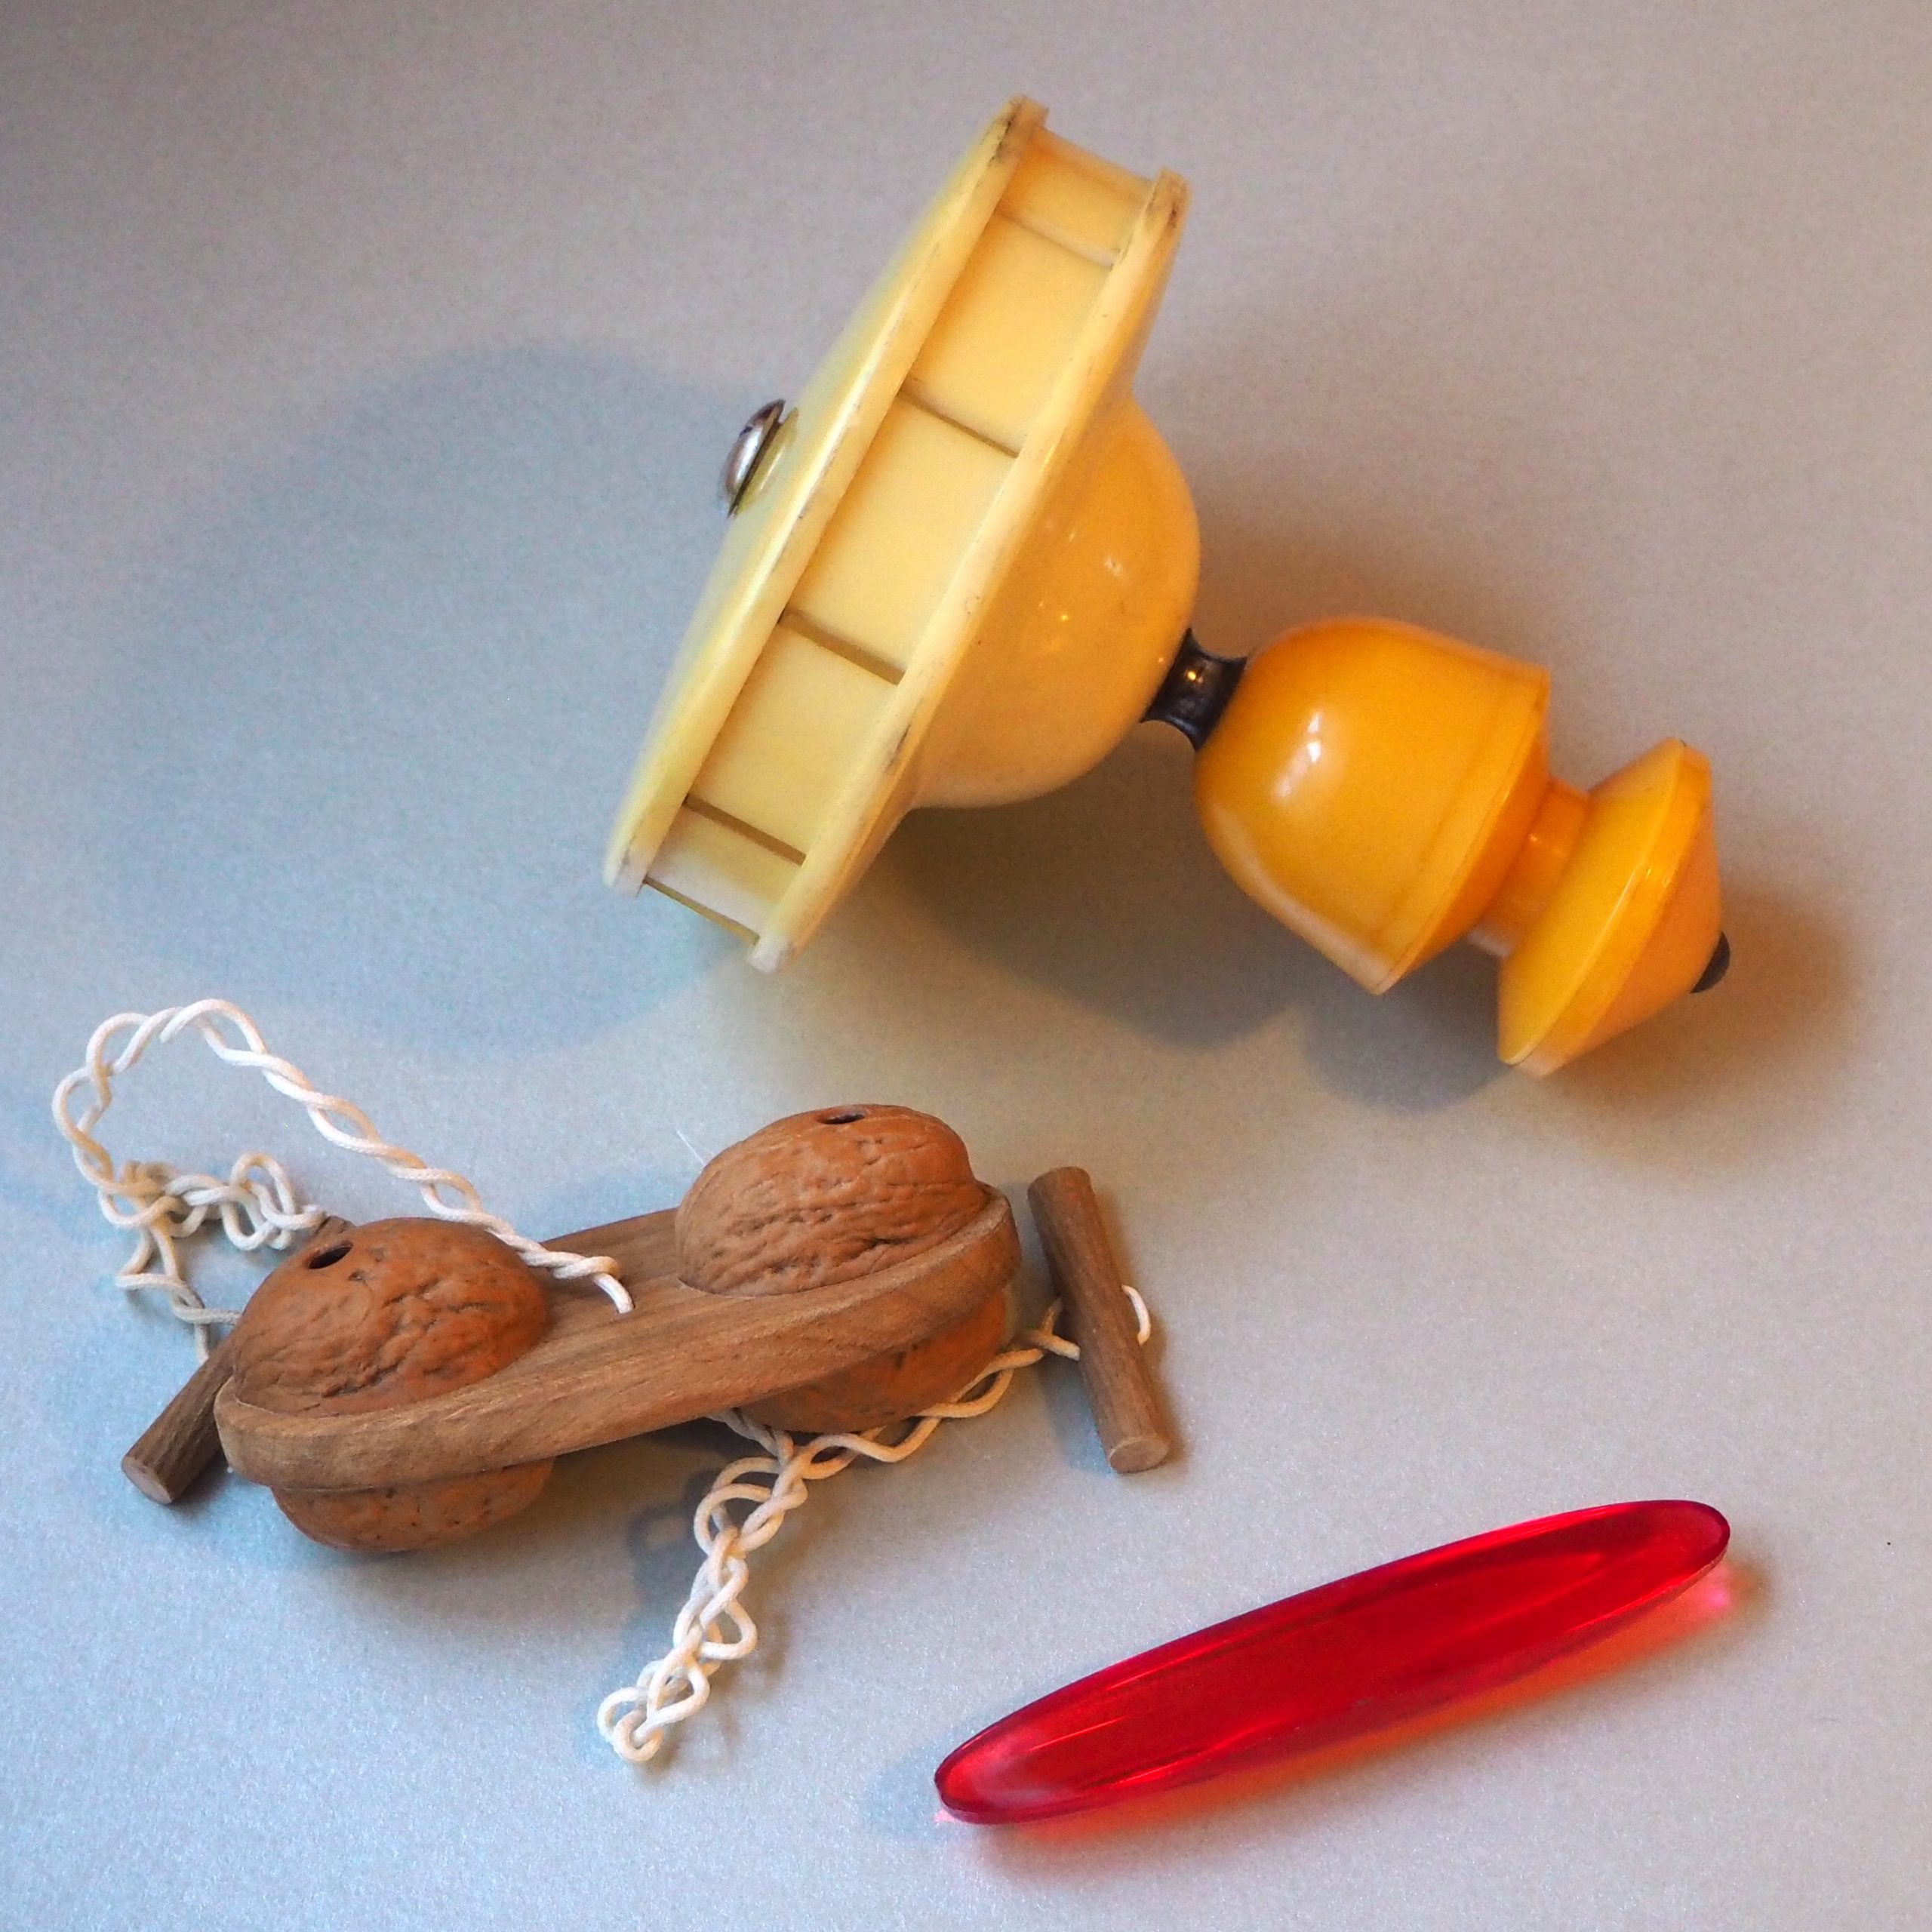 Ein chinesisches einsitiges Diabolo (Monobolo), eine Schnurre (Holz und Walnüsse) und ein Wackelholz (rattleback), allerdings aus Kunststoff